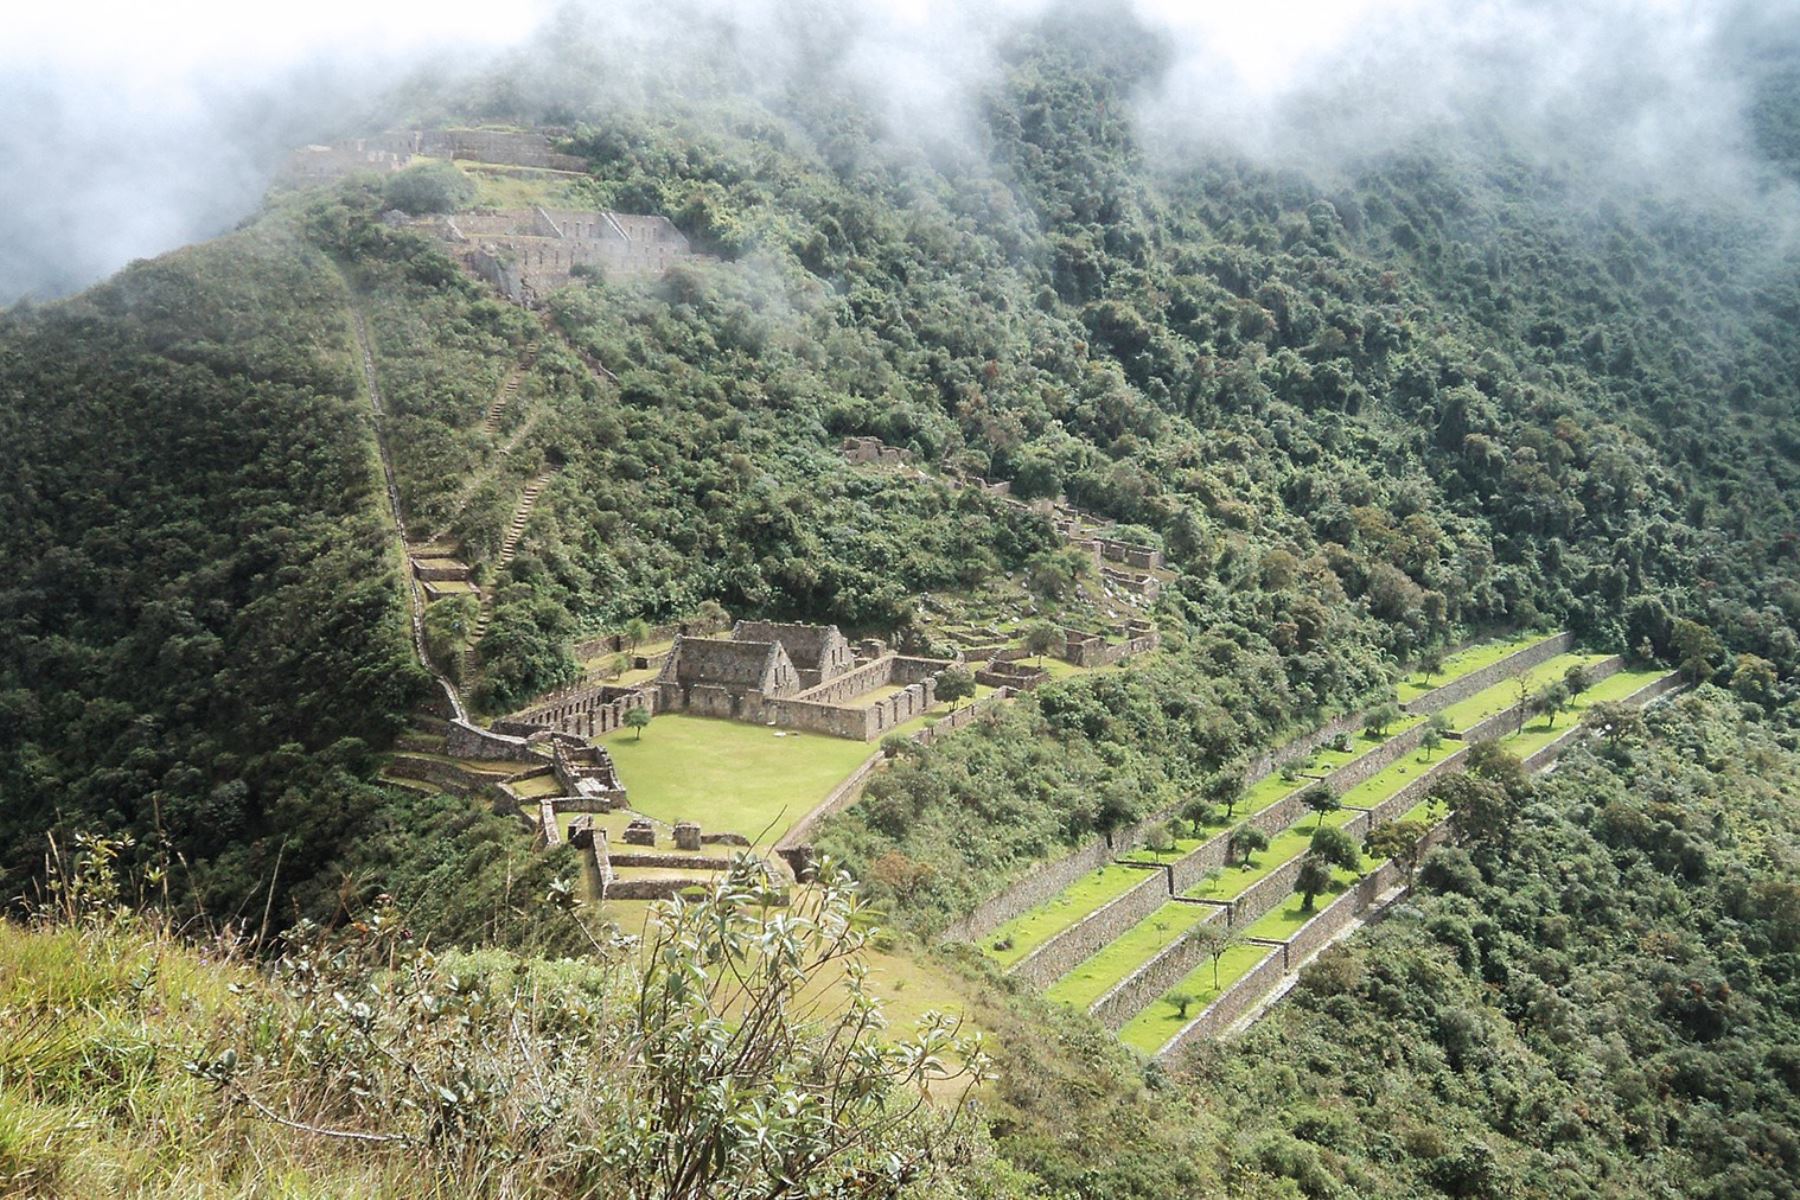 Parque arqueológico Choquequirao, ubicado en el distrito de Santa Teresa, provincia de La Convnención, región Cusco. ANDINA/Percy Hurtado